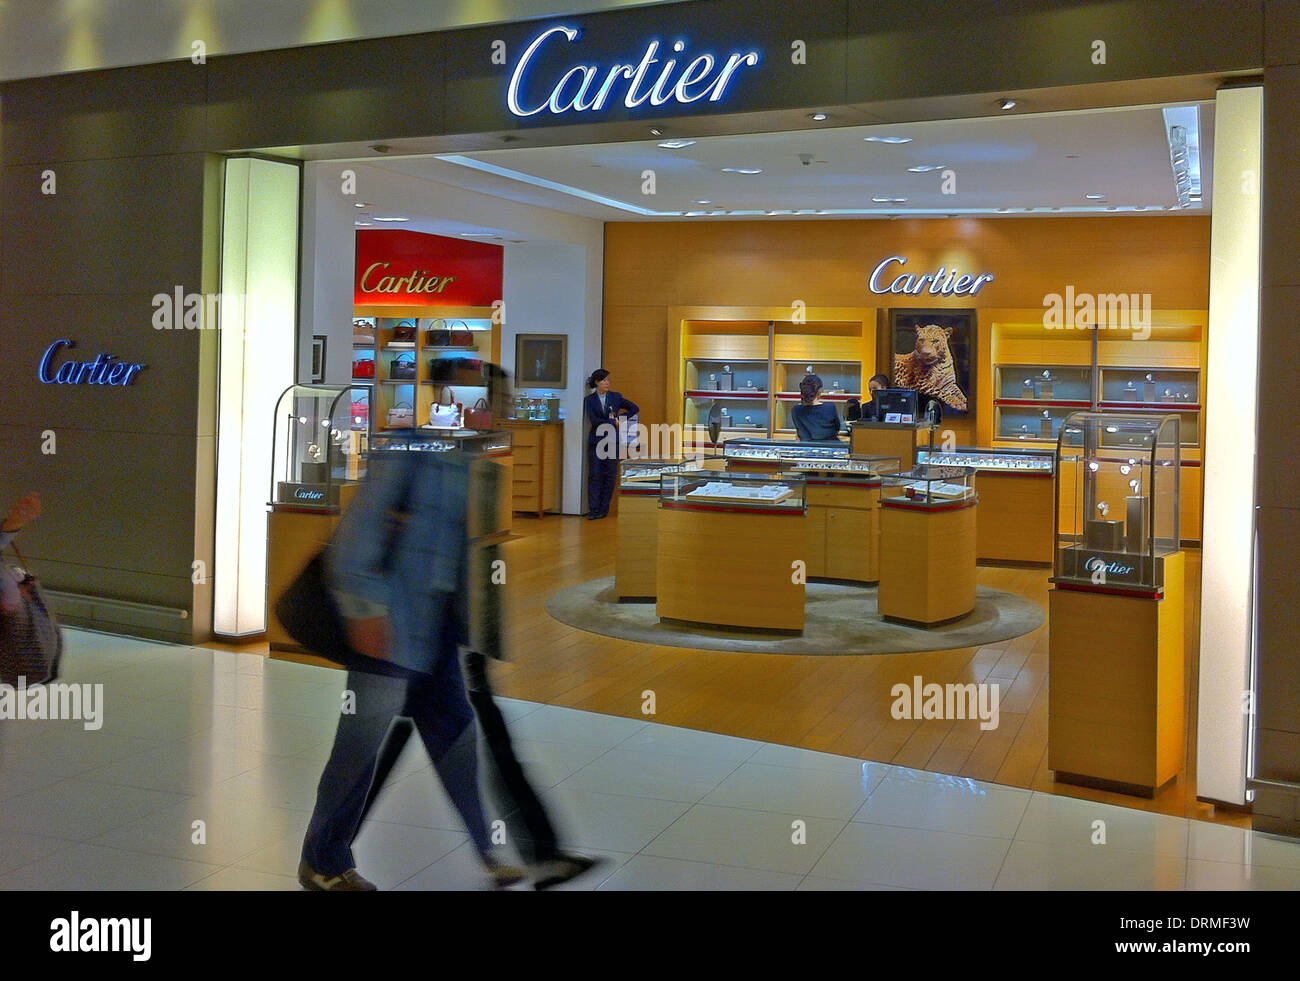 CARTIER store at Bangkok Airport 